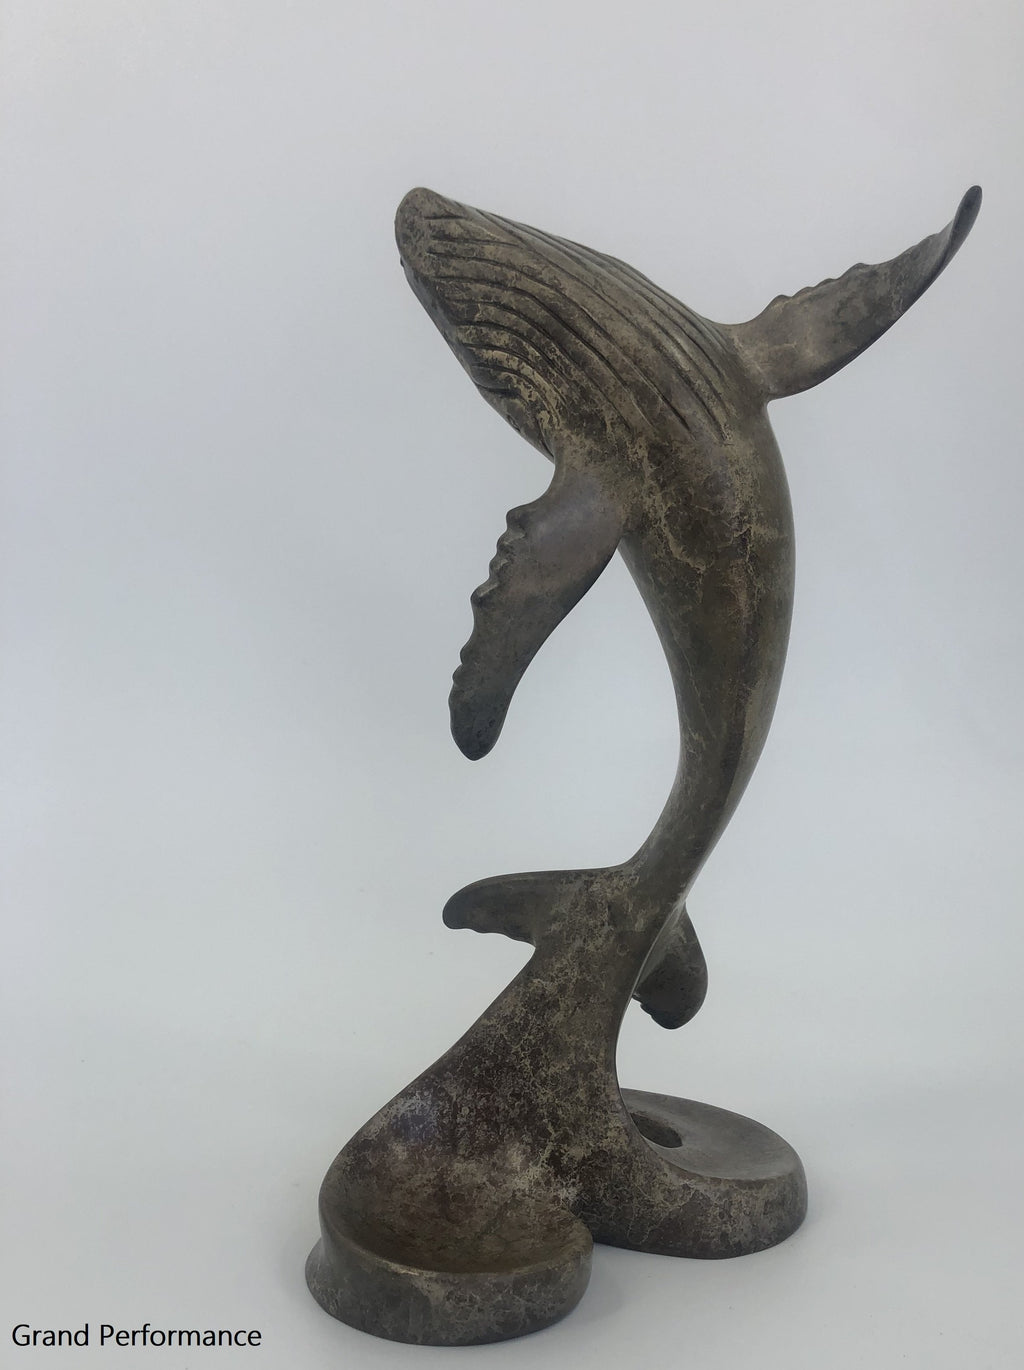 Bronze Whale Sculpture - Joyful Life Series  "Grand Performance" 12" tall